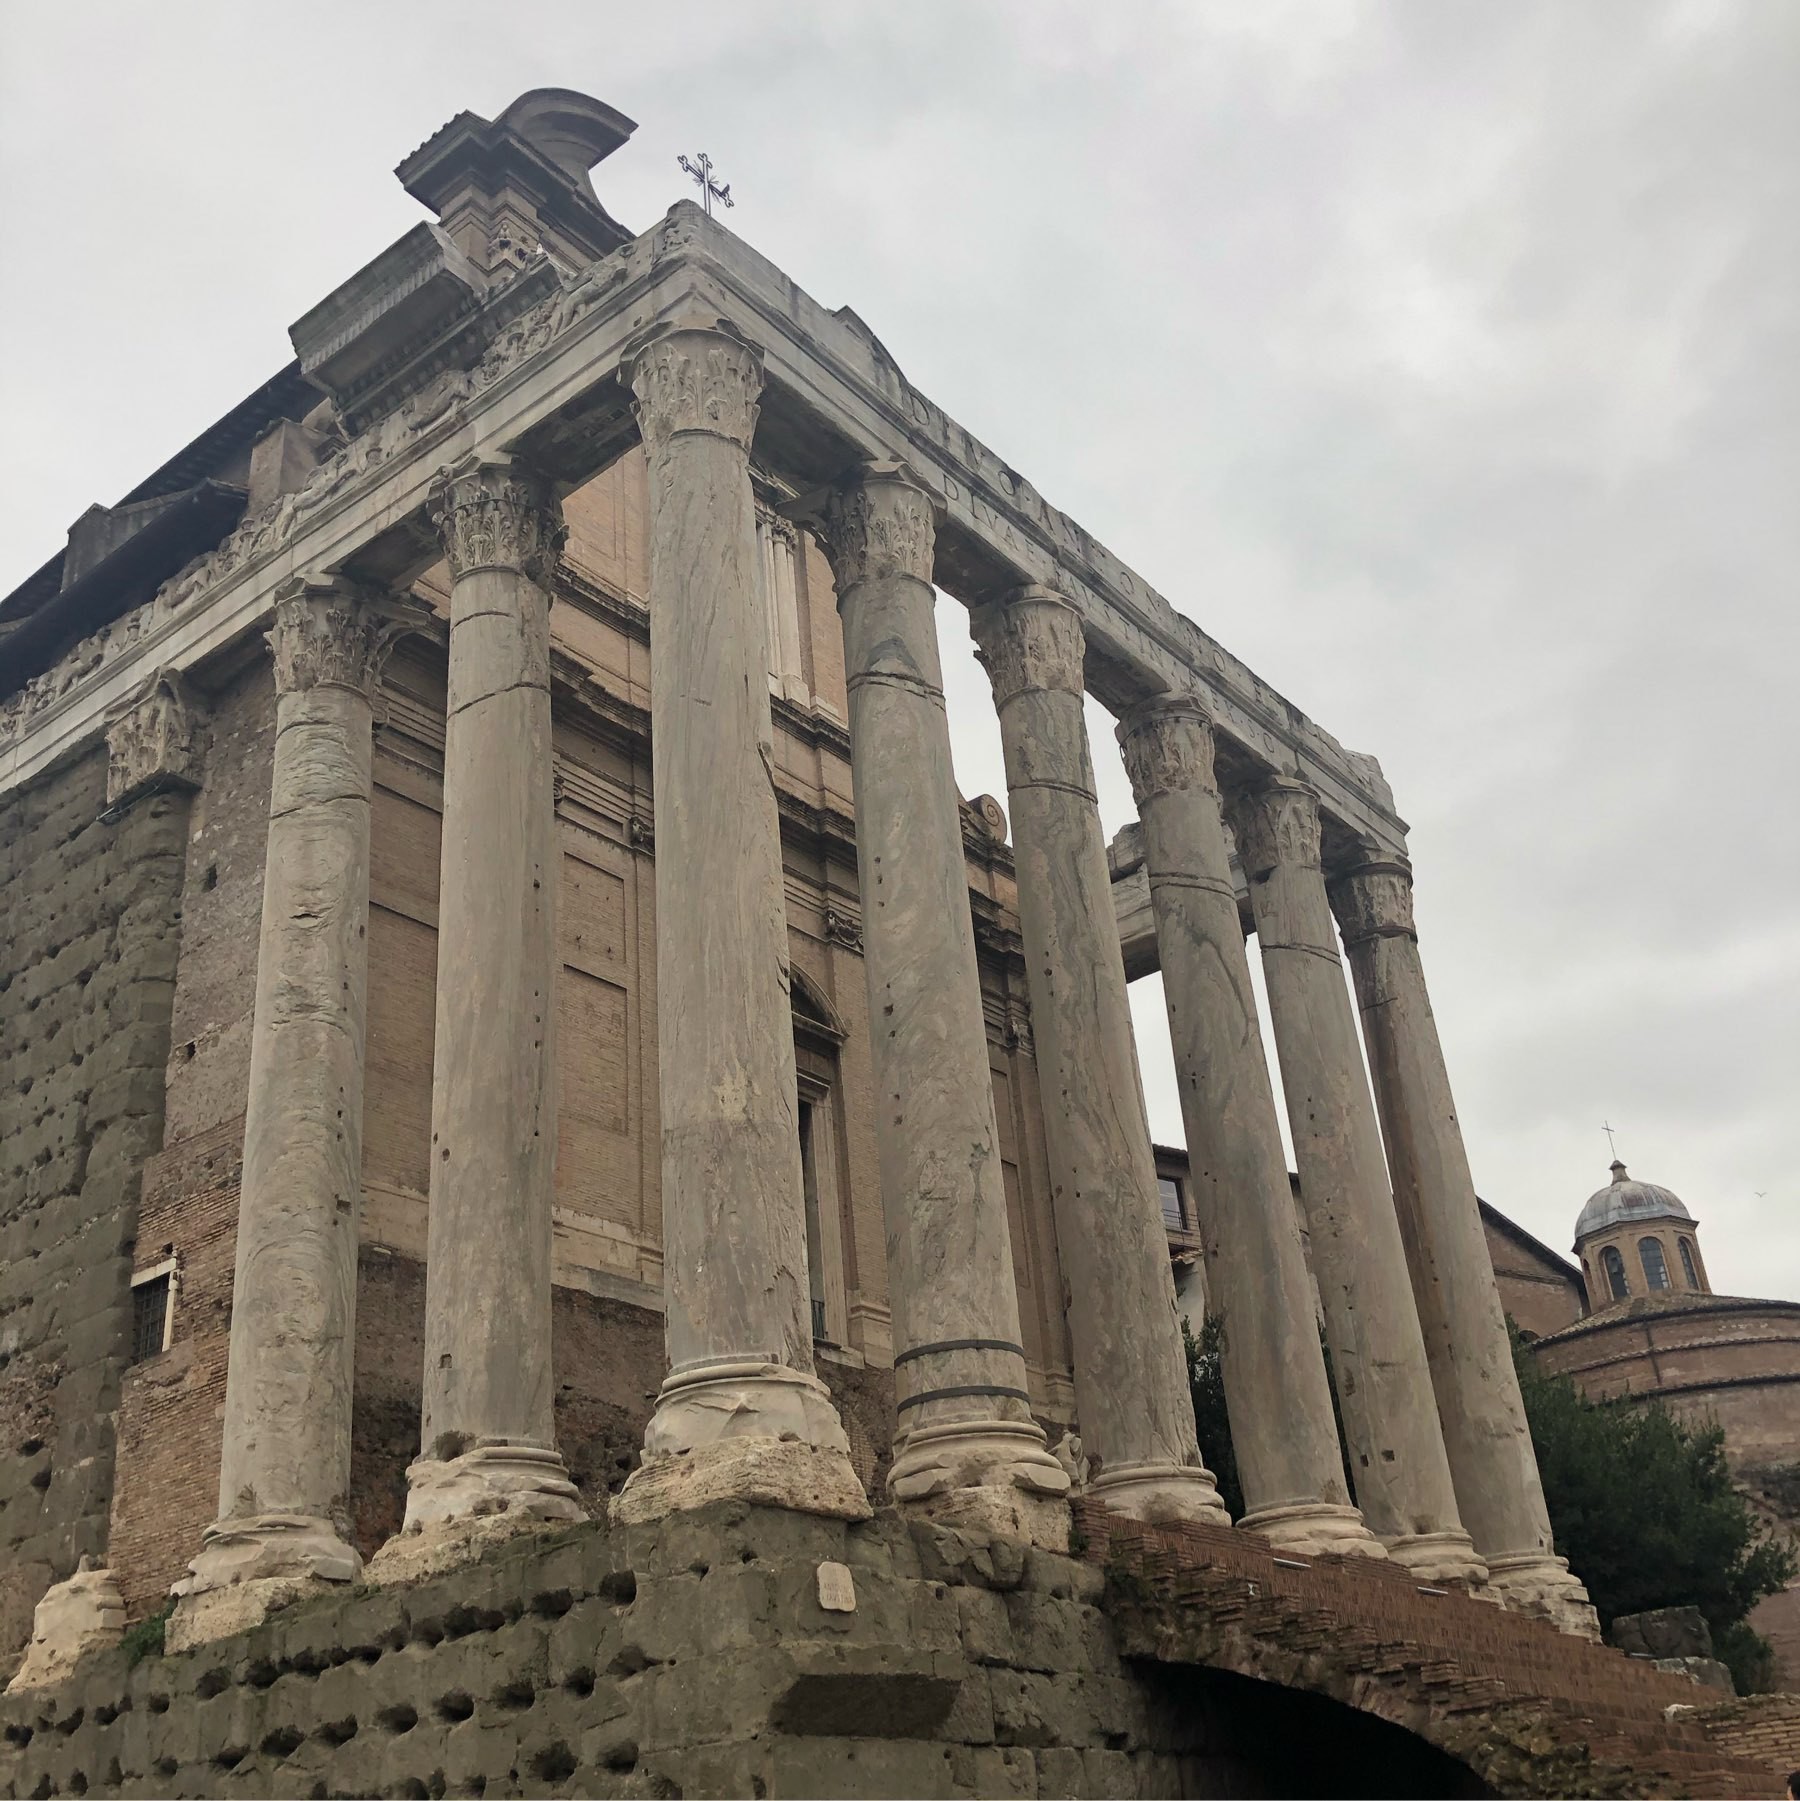 Ashtonishing interior of the roman forum with big pilars